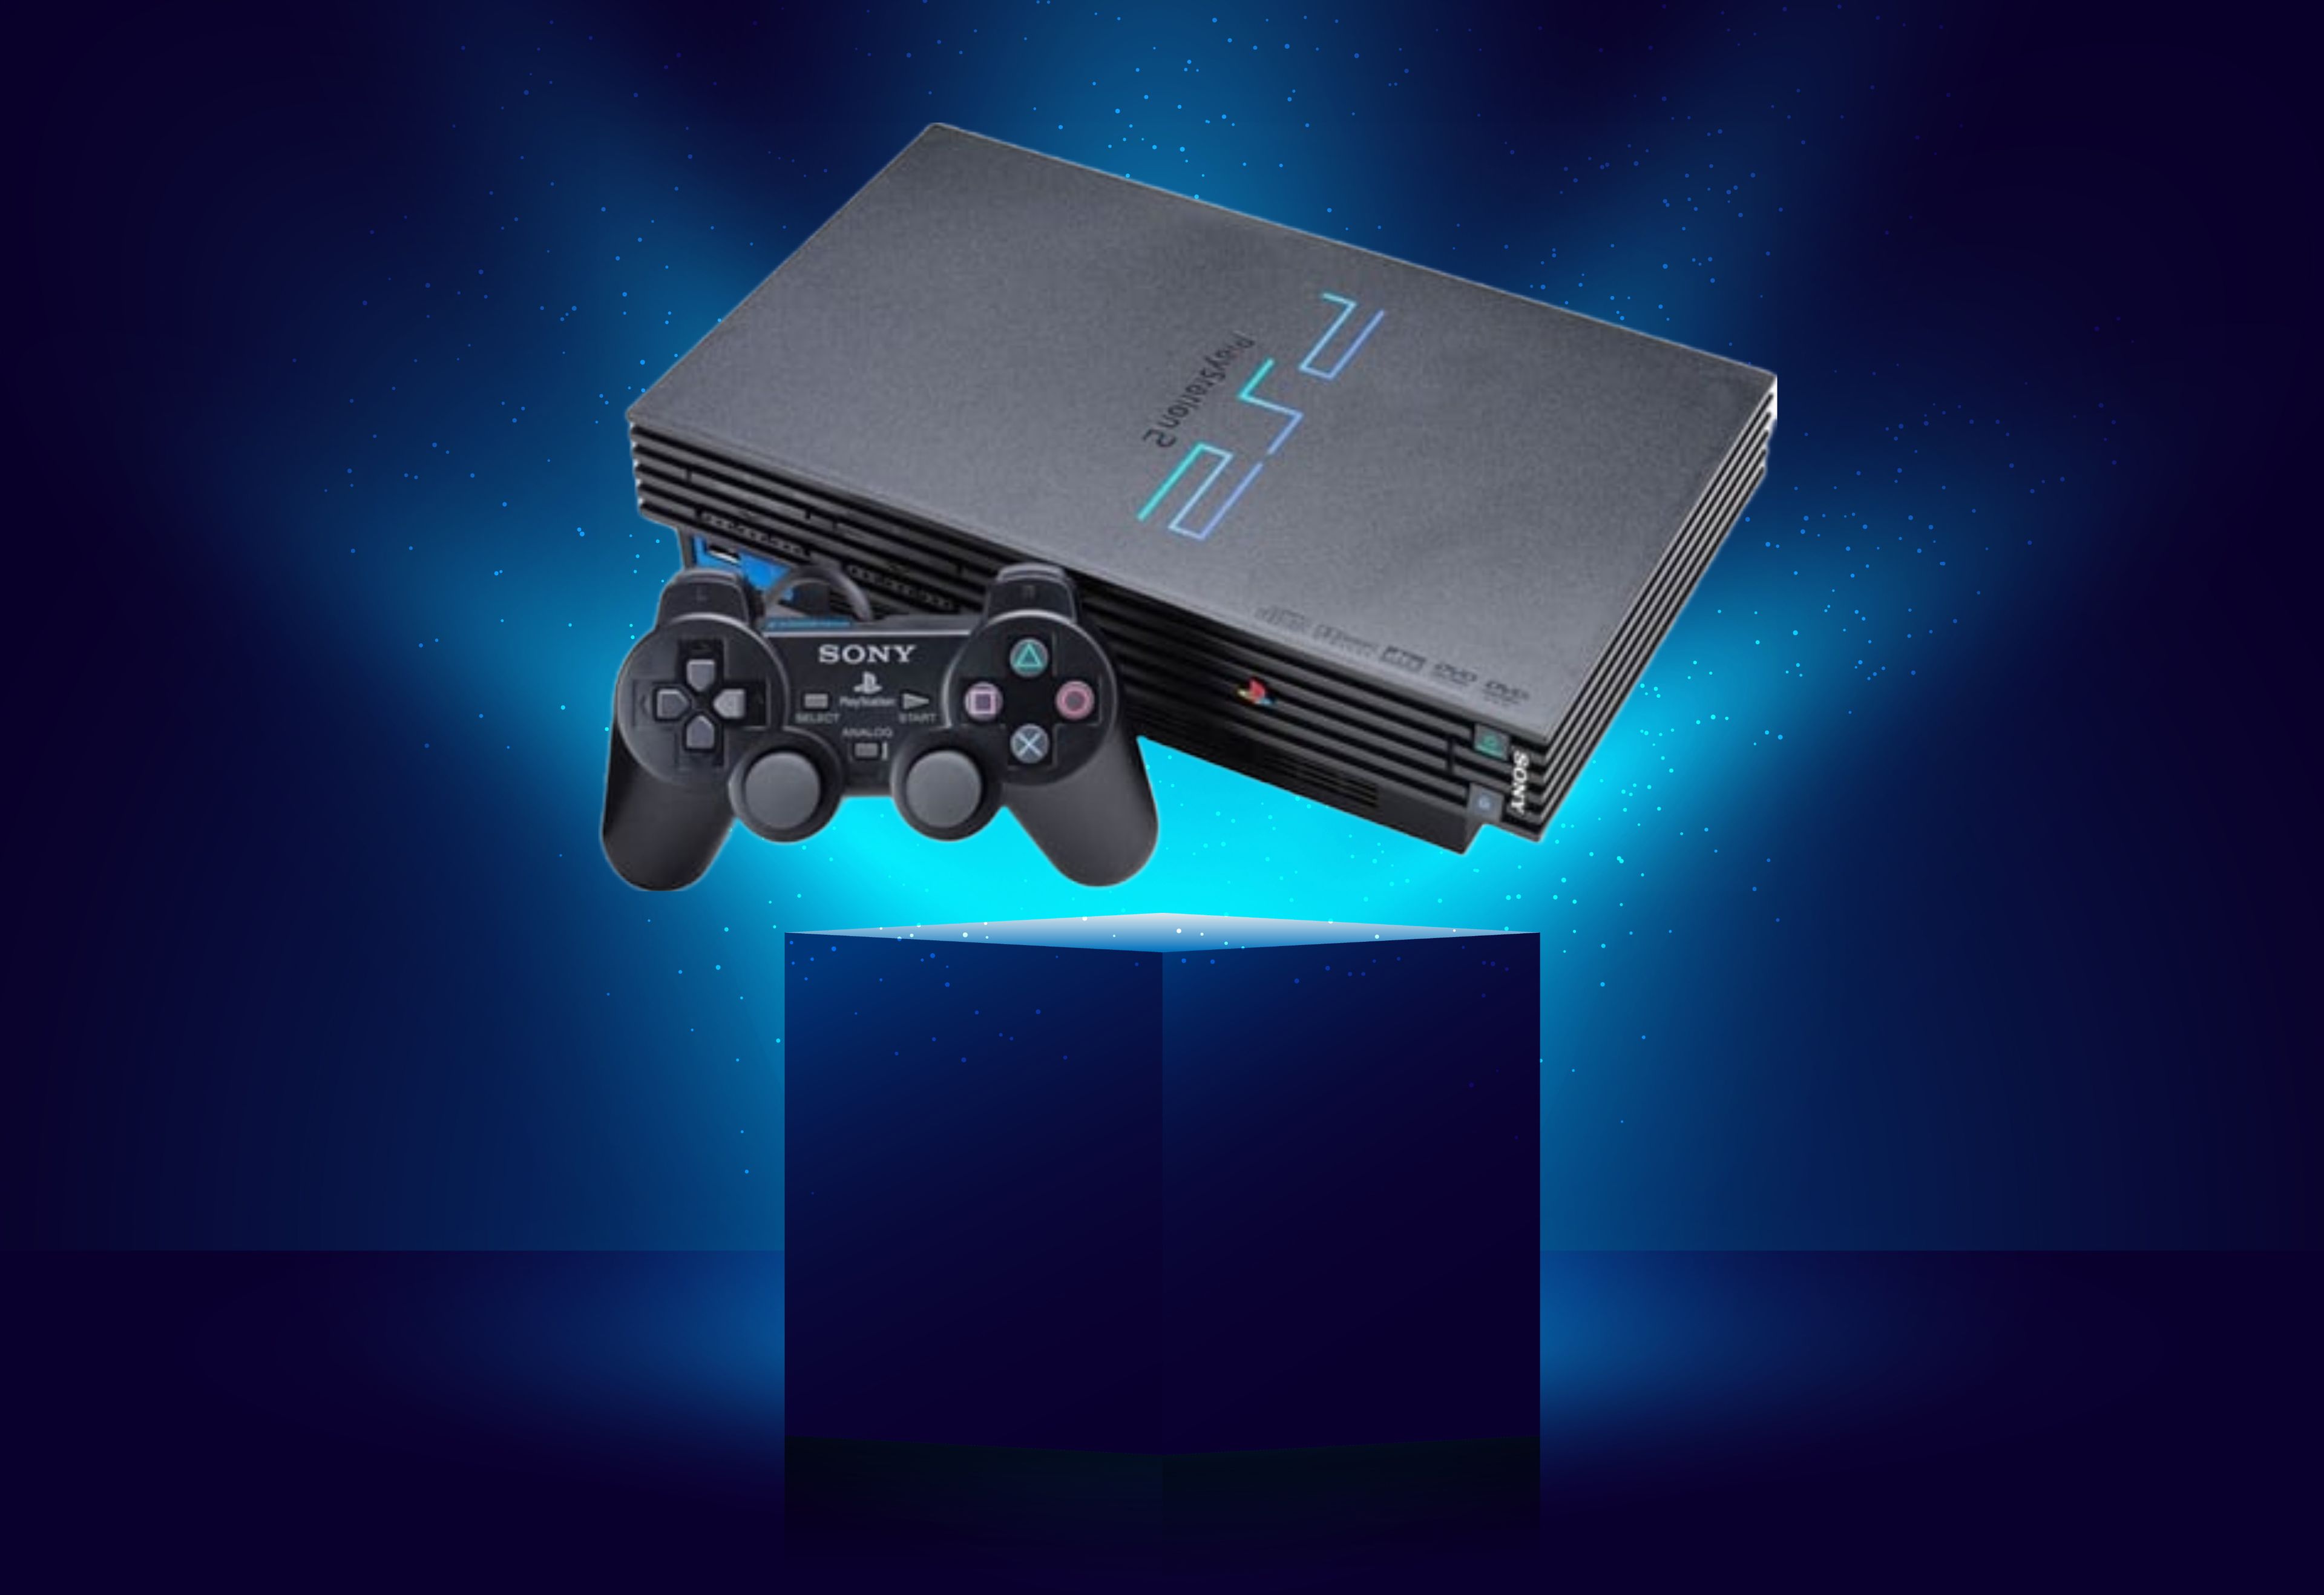 Los mejores juegos de PlayStation 2 (PS2)